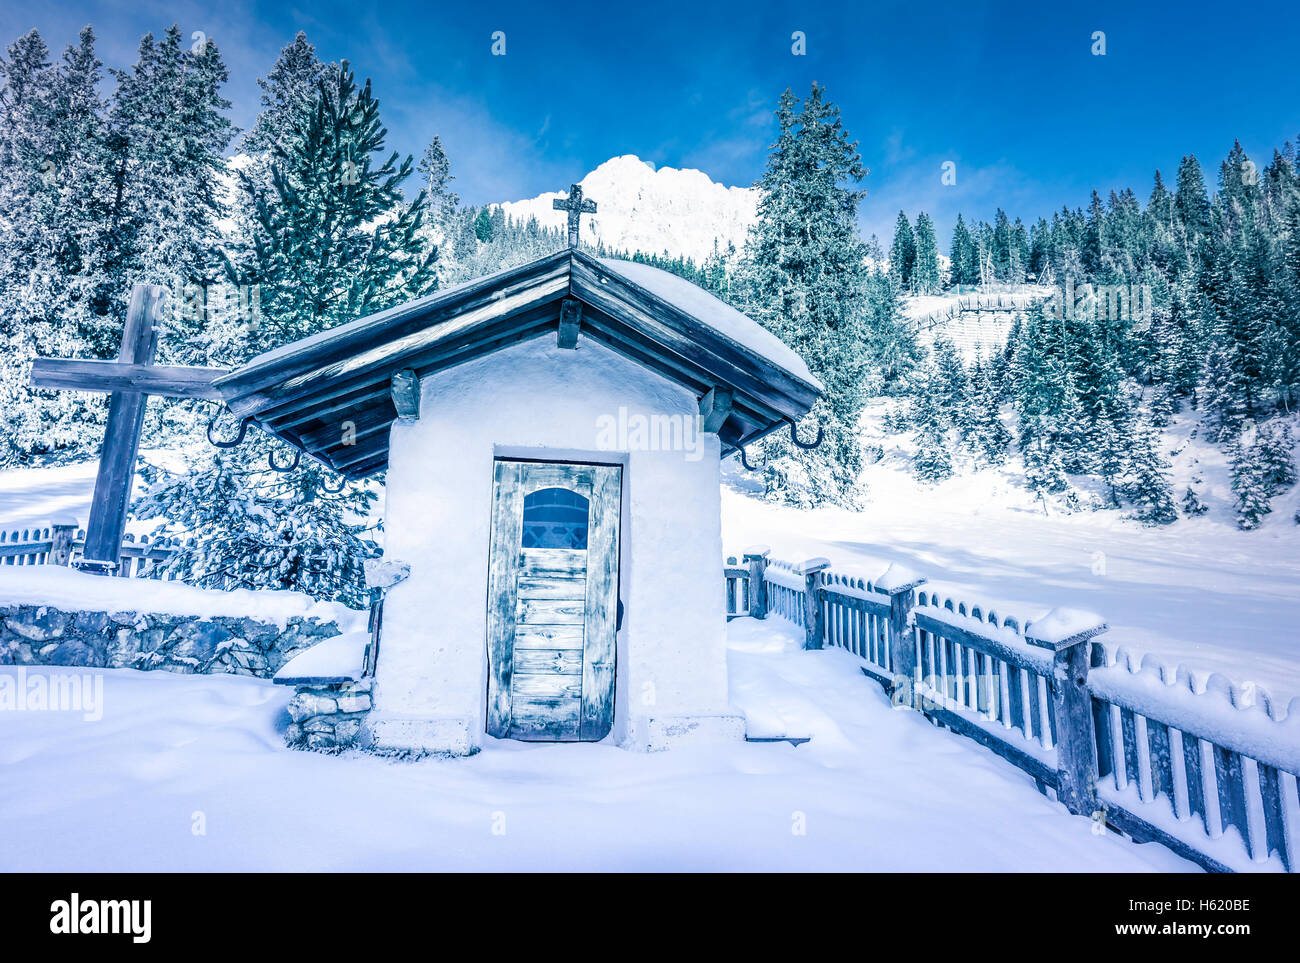 Alpine rustic chapel in winter decor Stock Photo